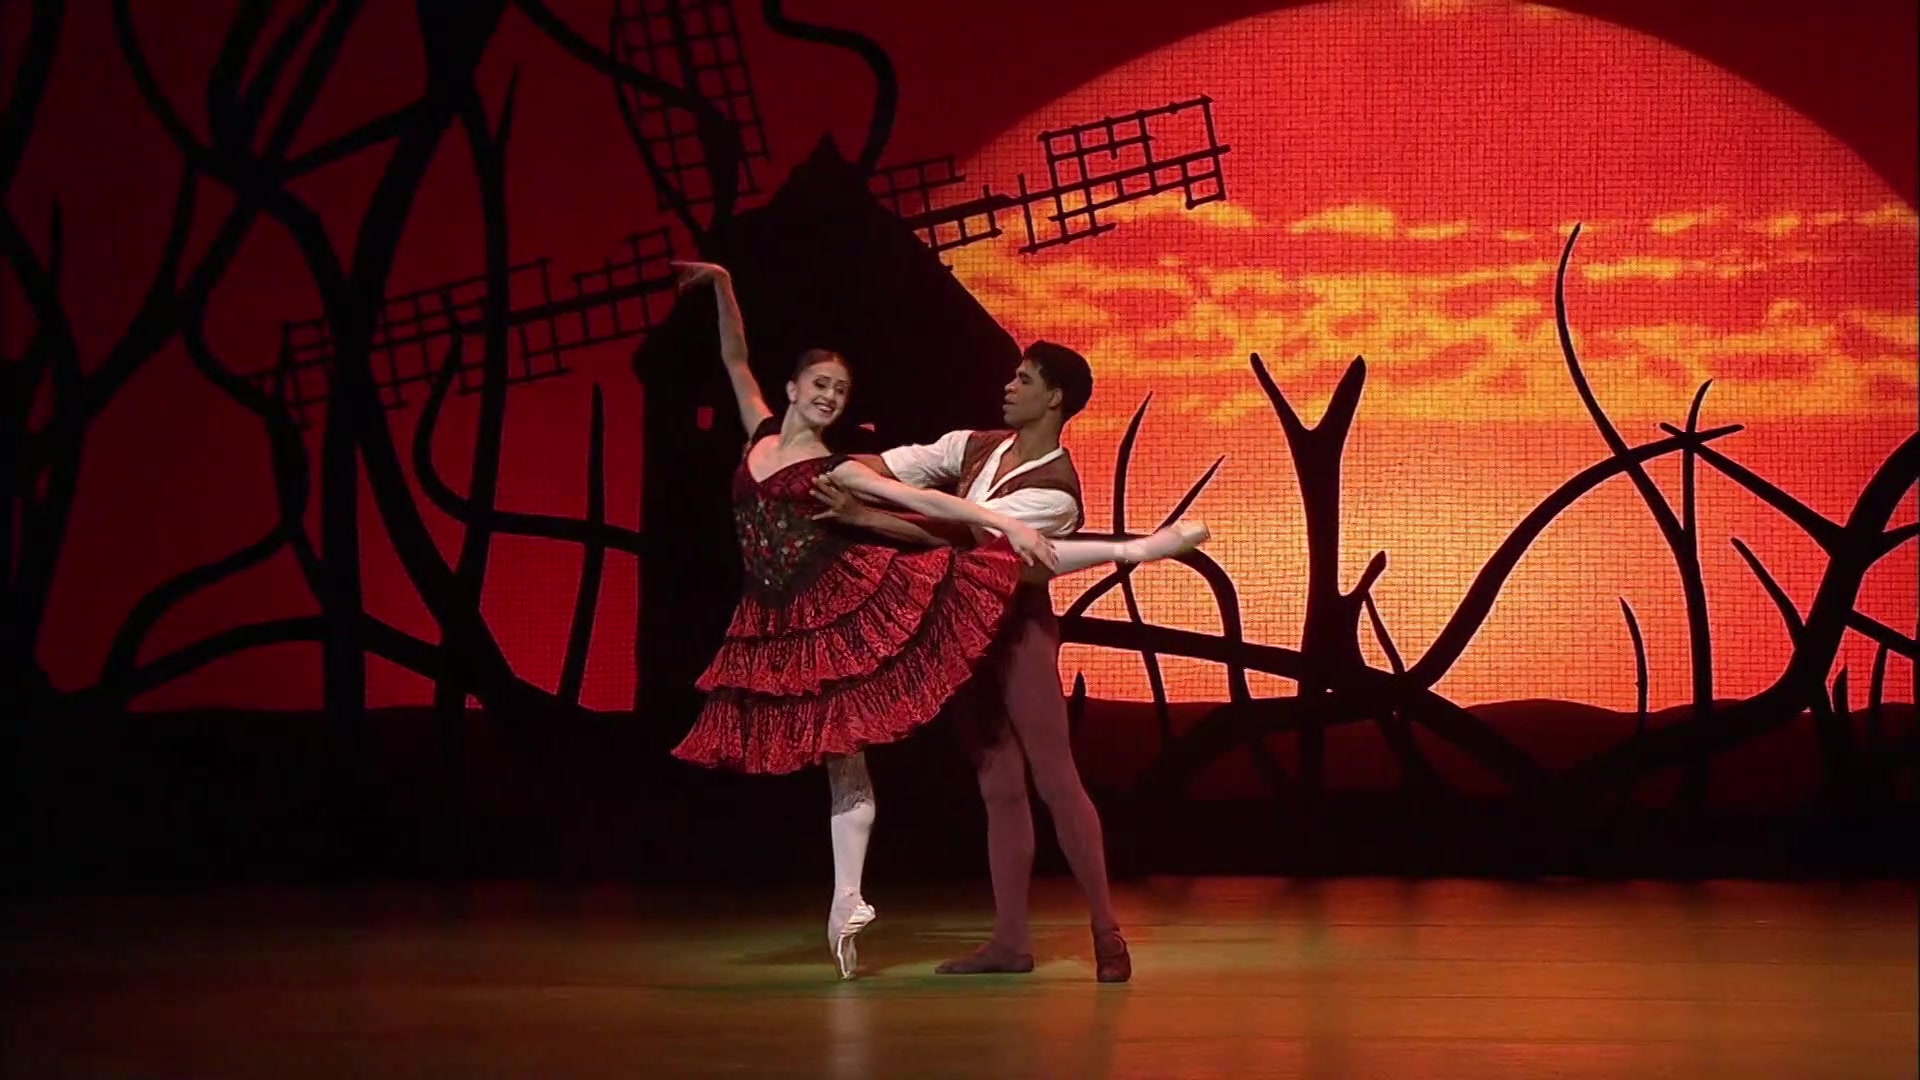 【芭蕾舞剧】Don Quixote（堂吉诃德），超清画质，2013年英国皇家芭蕾舞团呈现，Marianela Nunez + Carlos Acosta